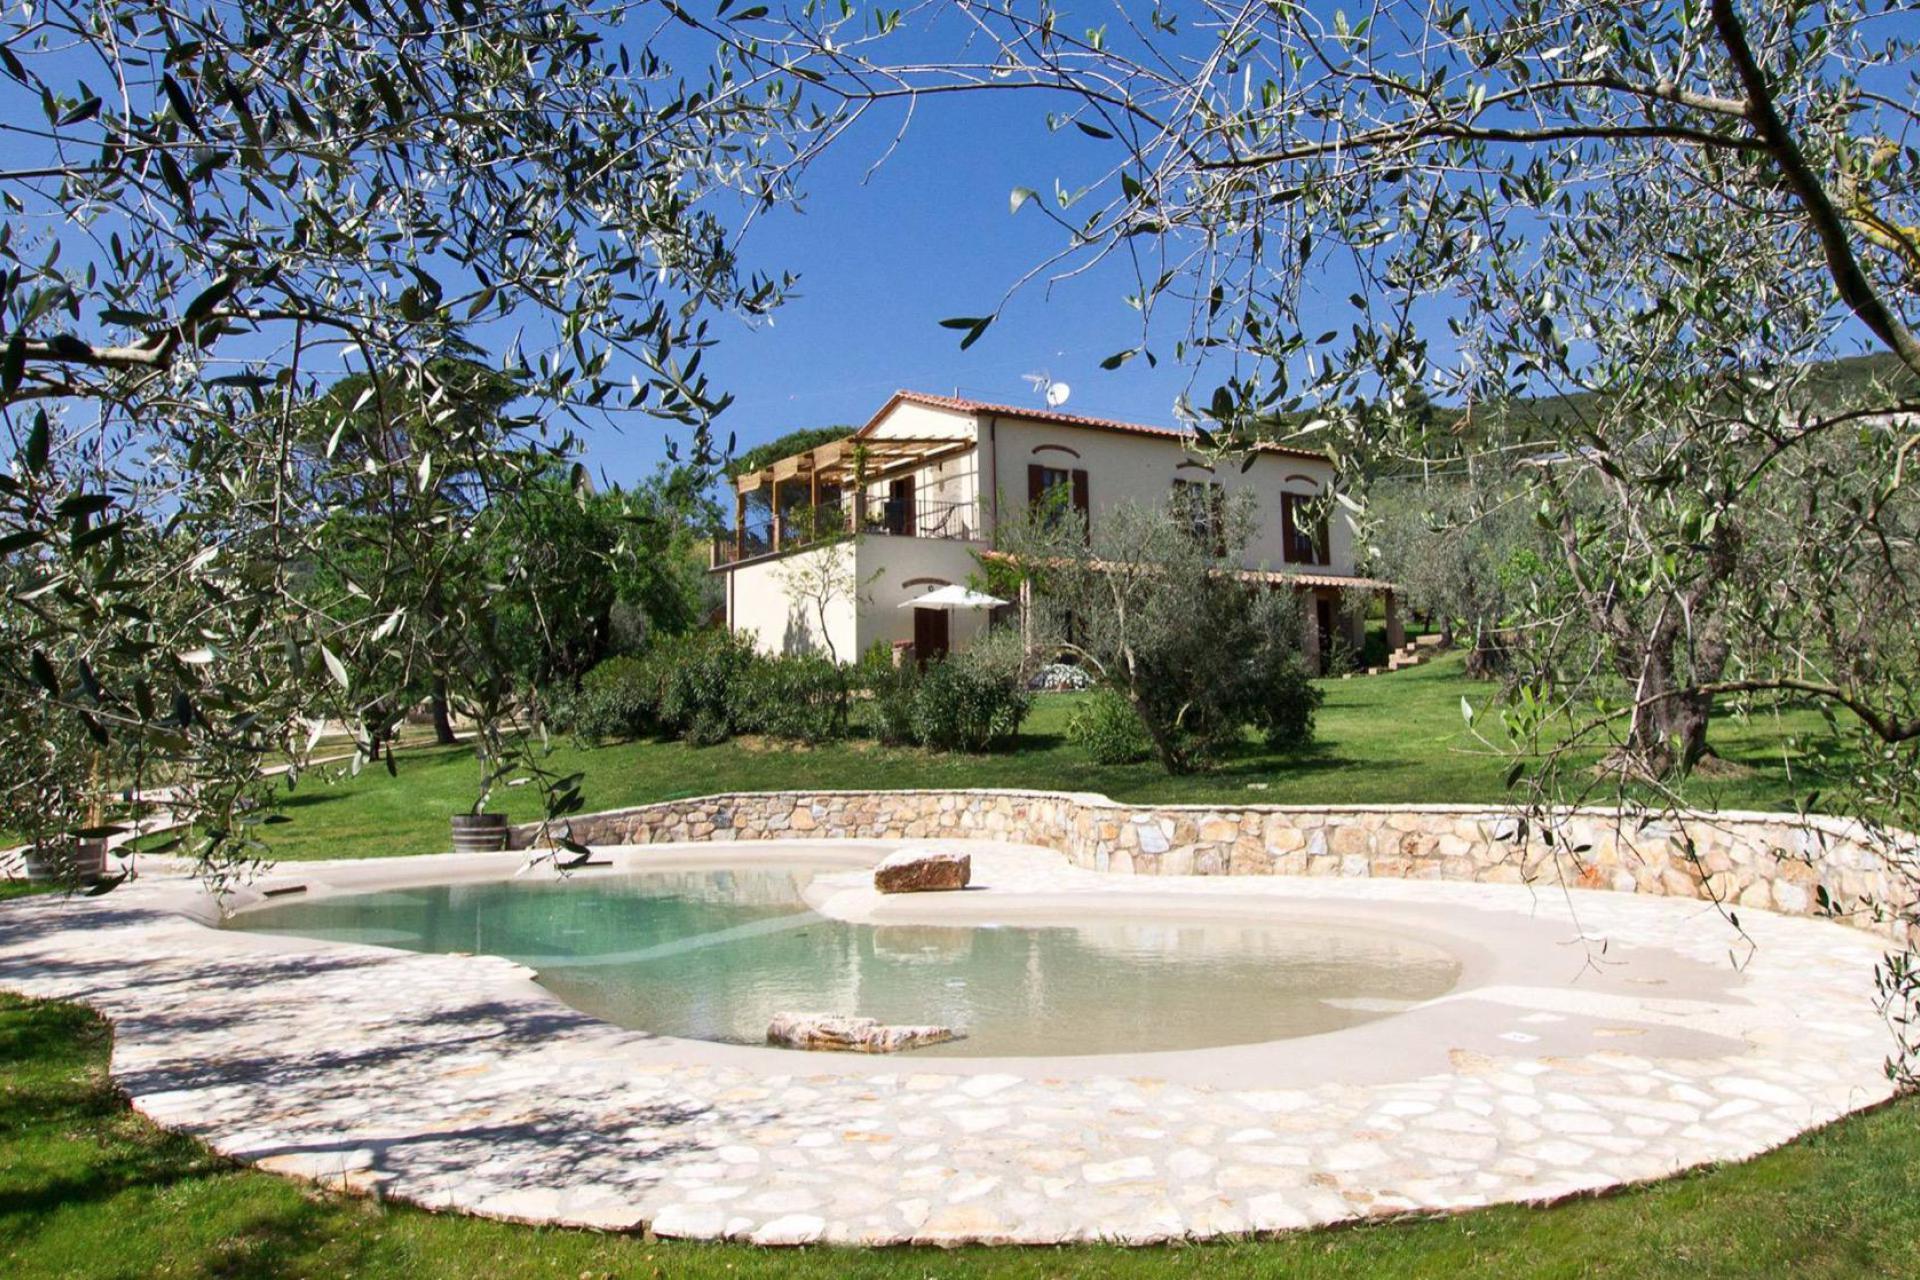 Agriturismo Toskana mit 6 Ferienwohnungen, zwischen Olivenbäumen, strandnah